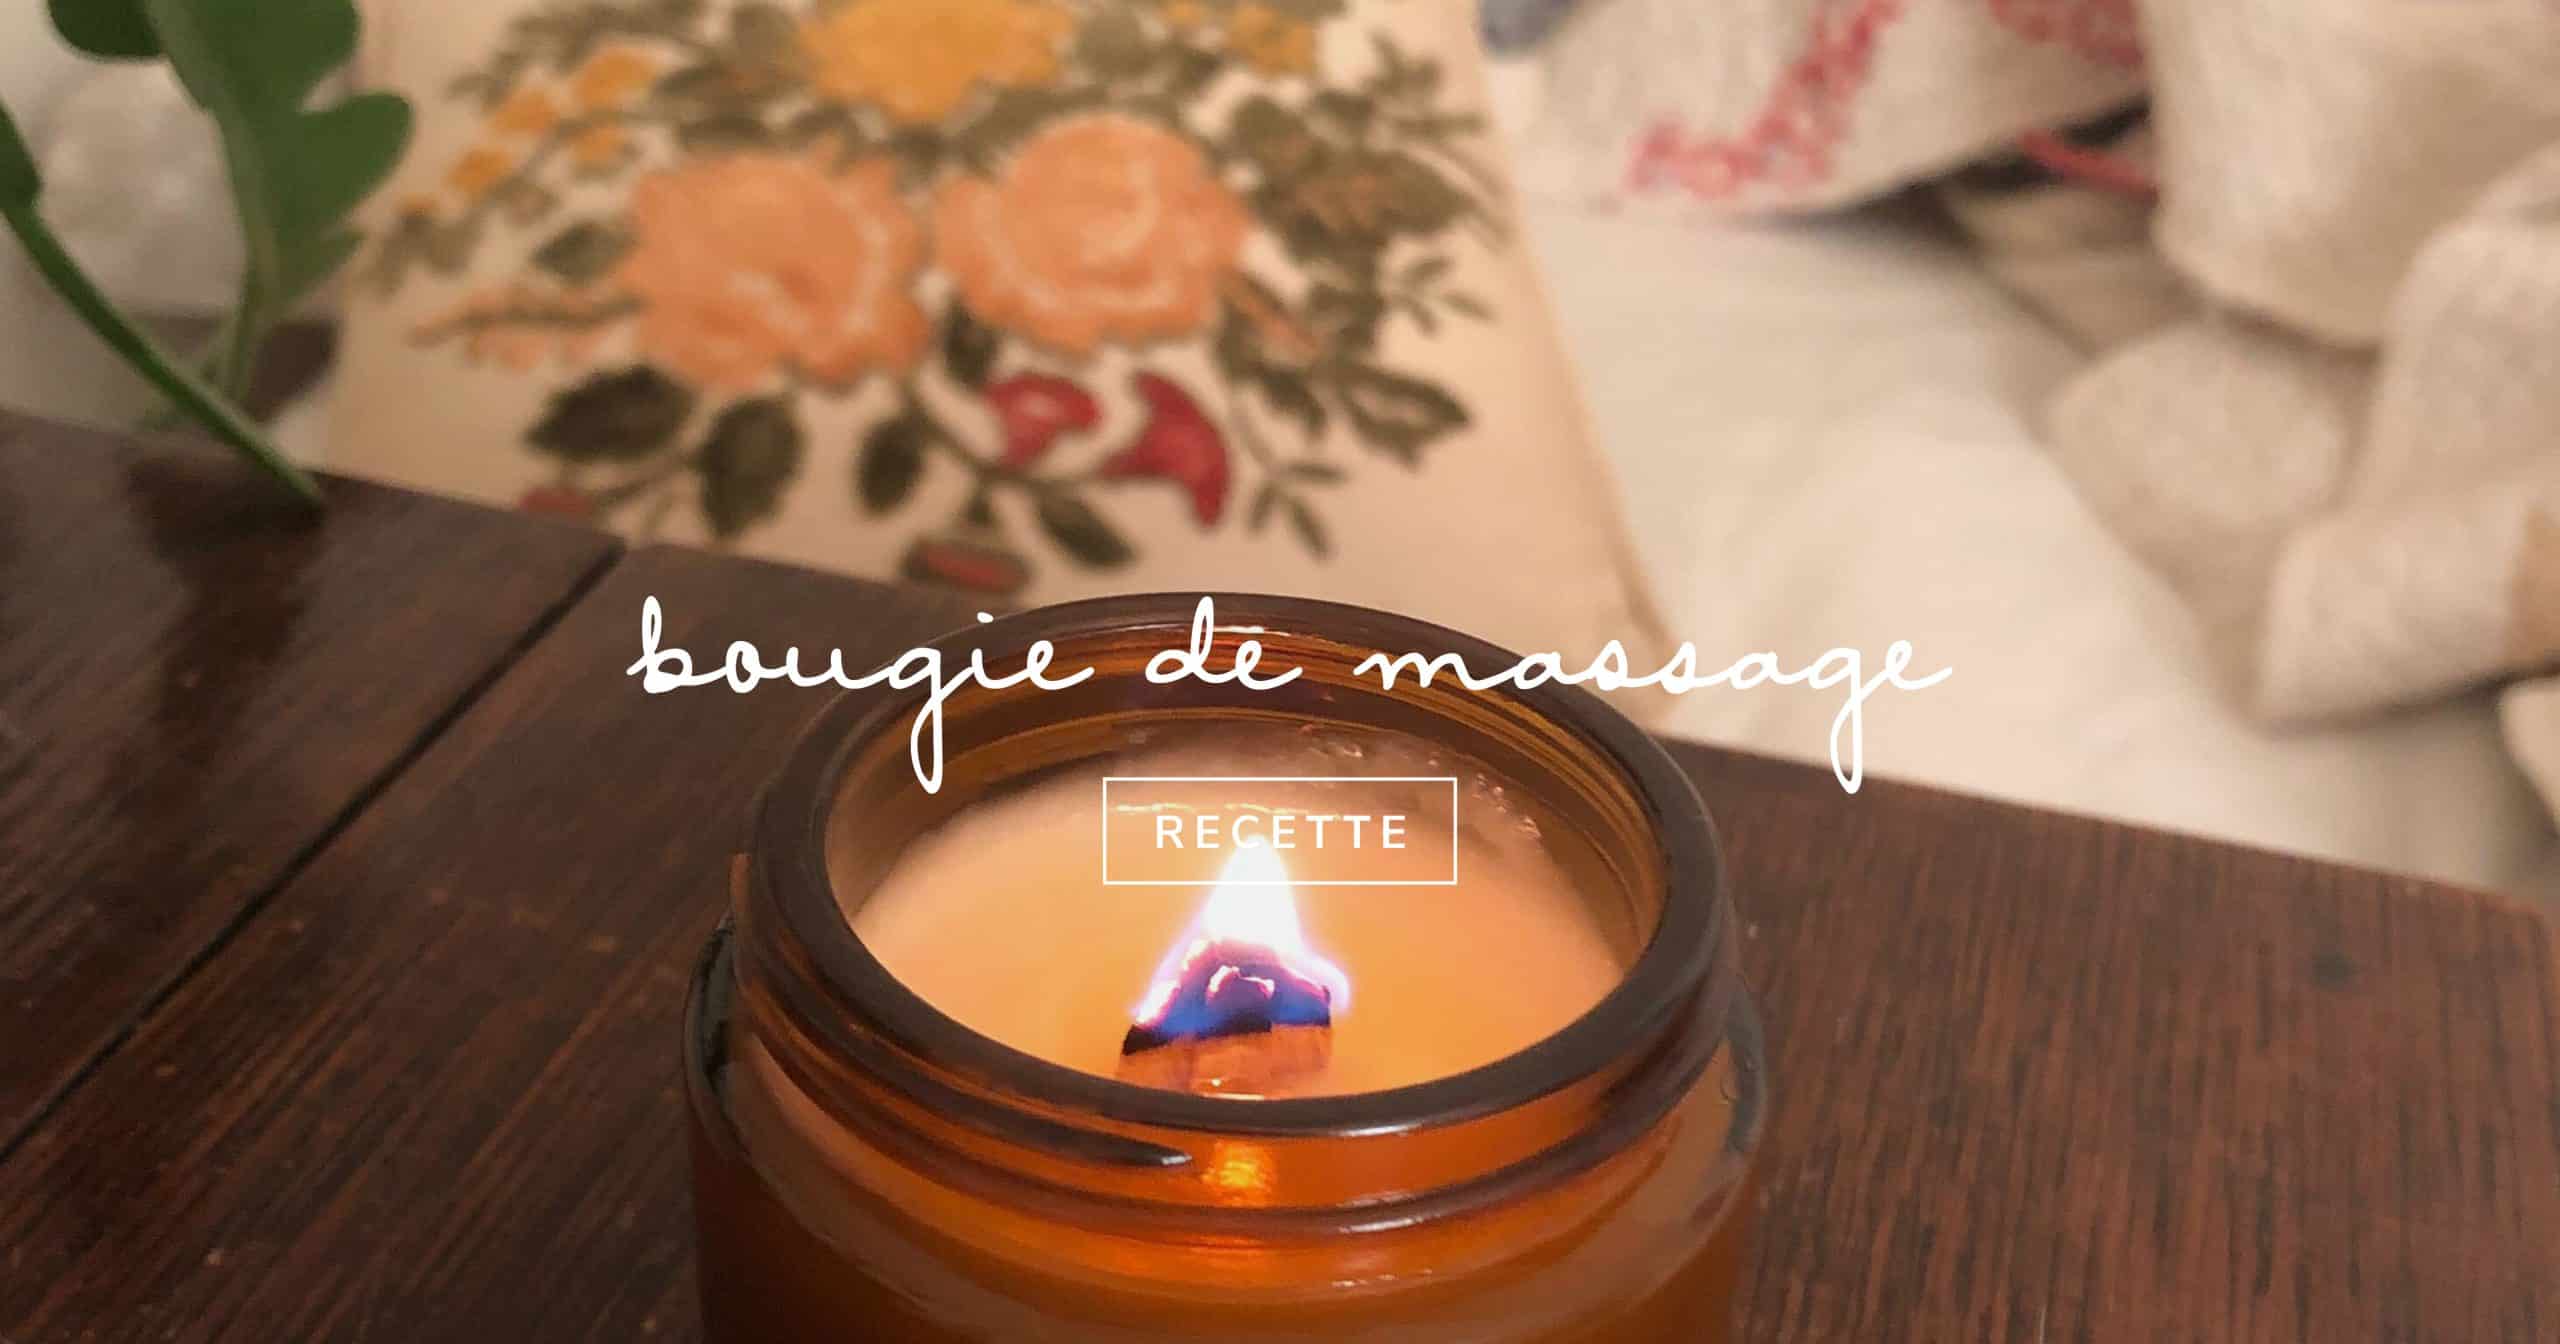 Recette Bougie de massage Ylang ylang Faite Maison - DIY